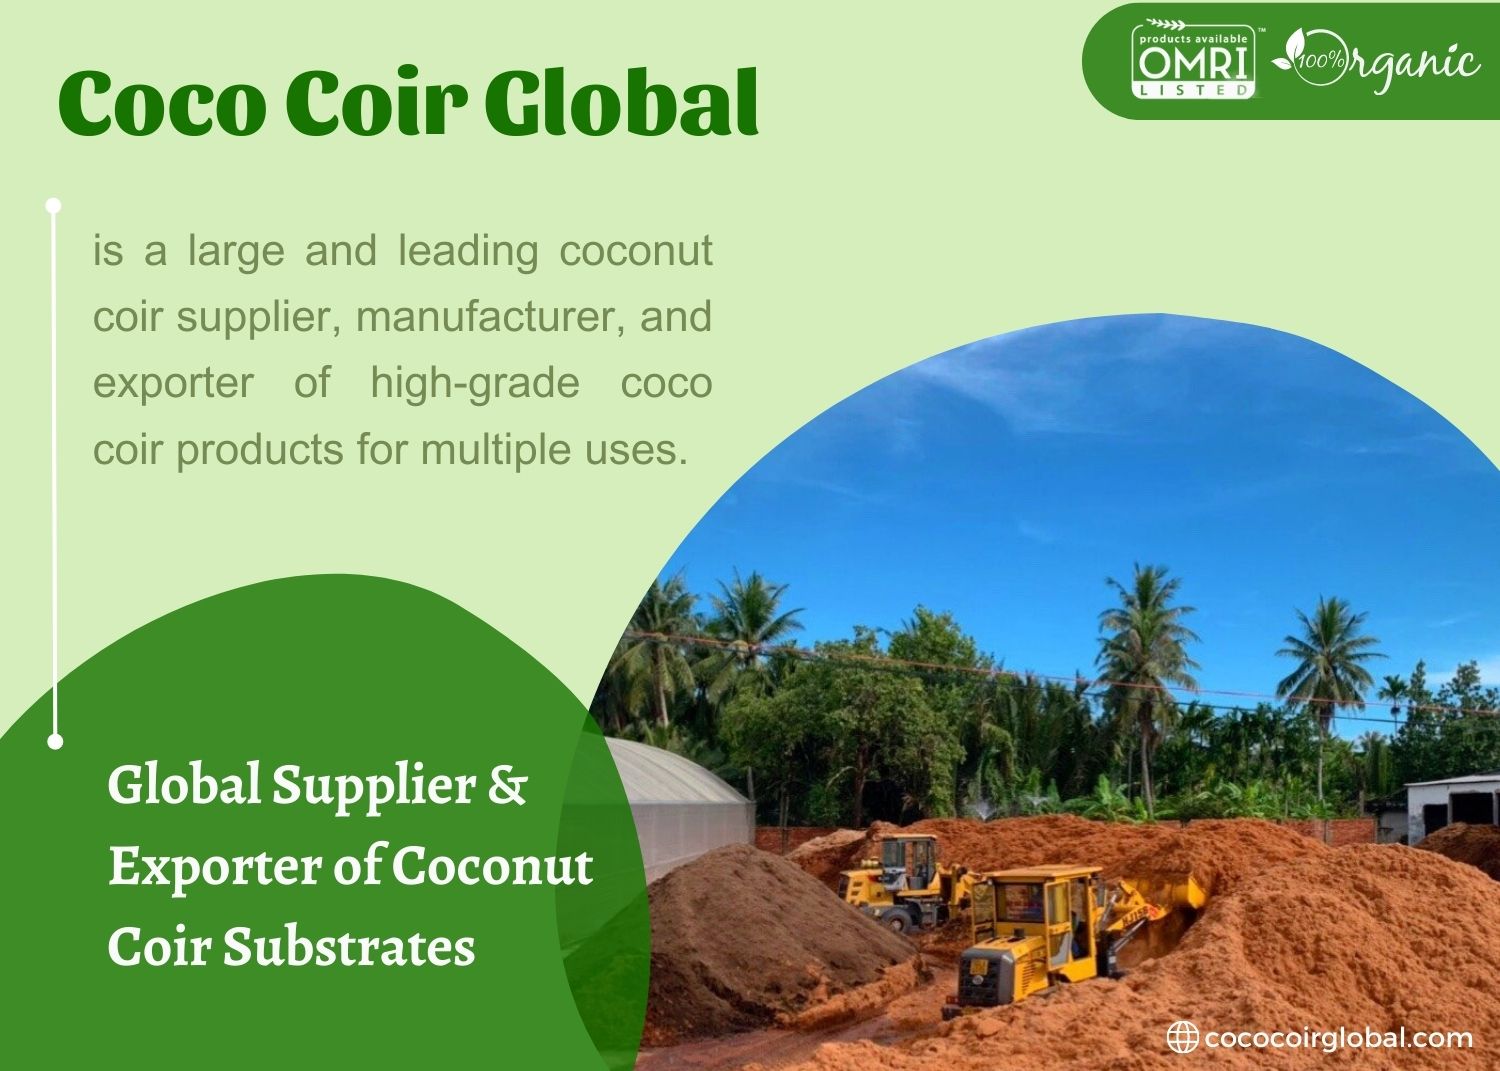 coco-coir-manufacturer-supplier-exporter-coco-coir-global-vietnam